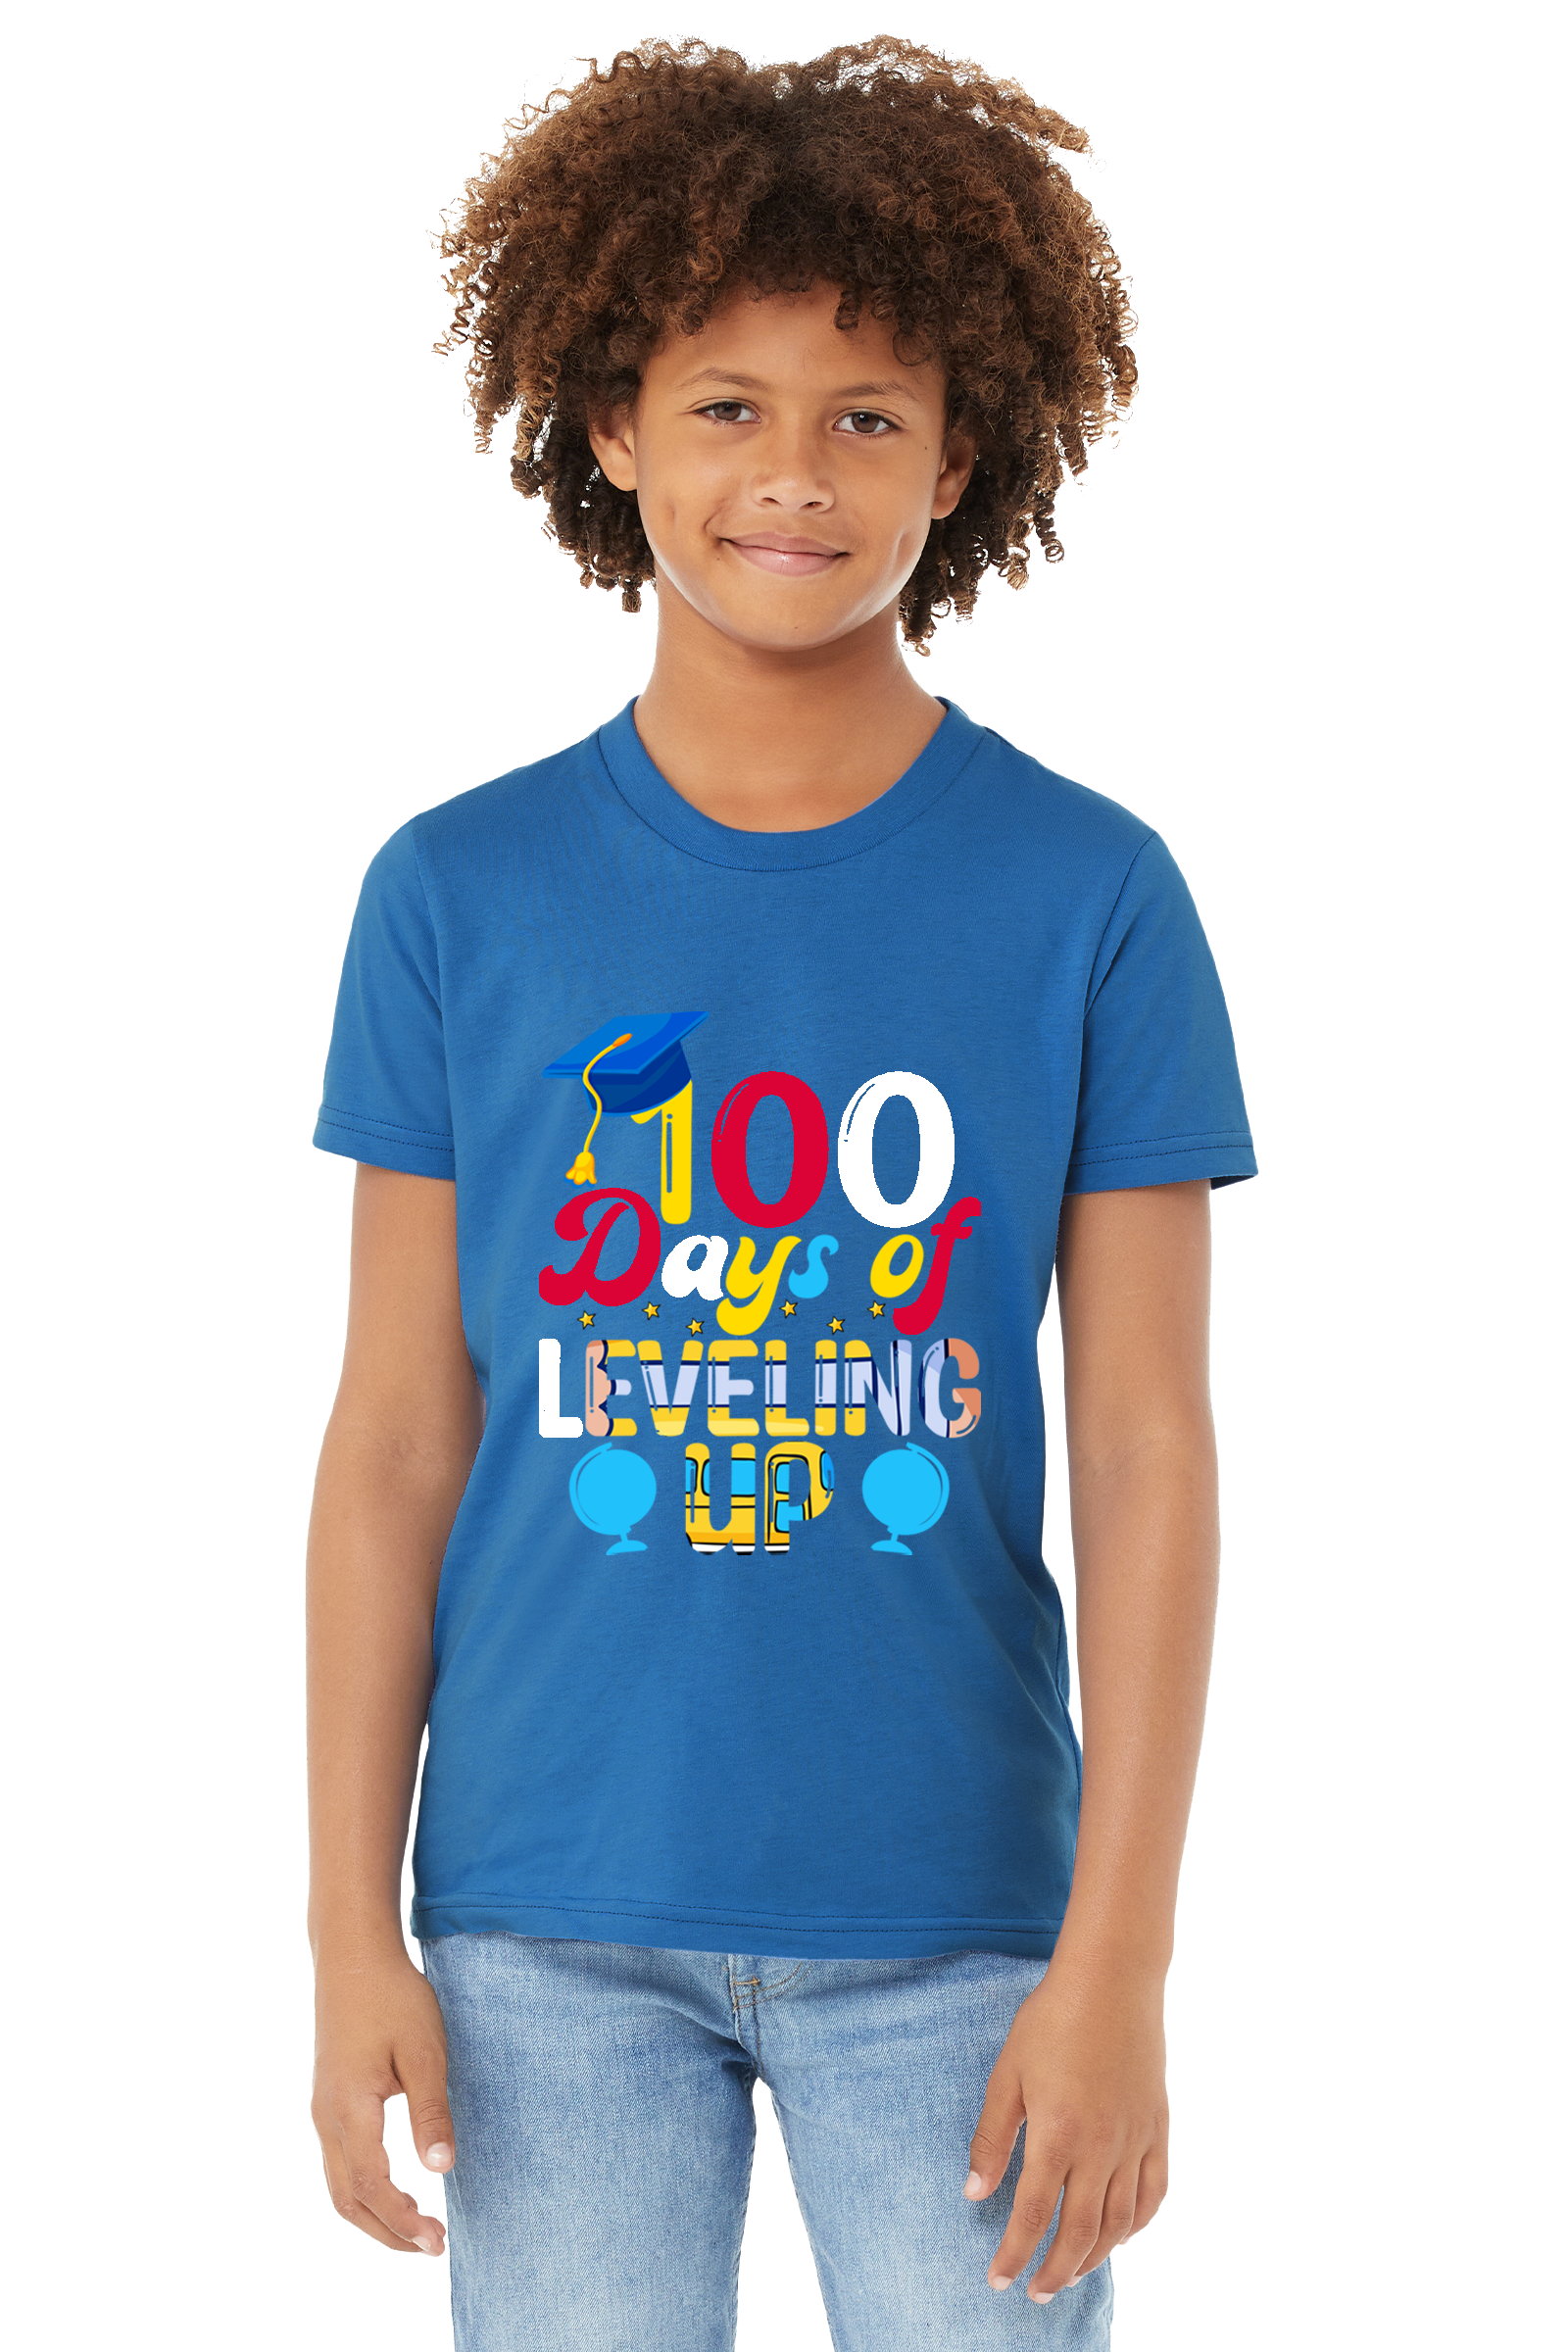 100 Days of Leveling Up  Unisex Youth T-Shirt